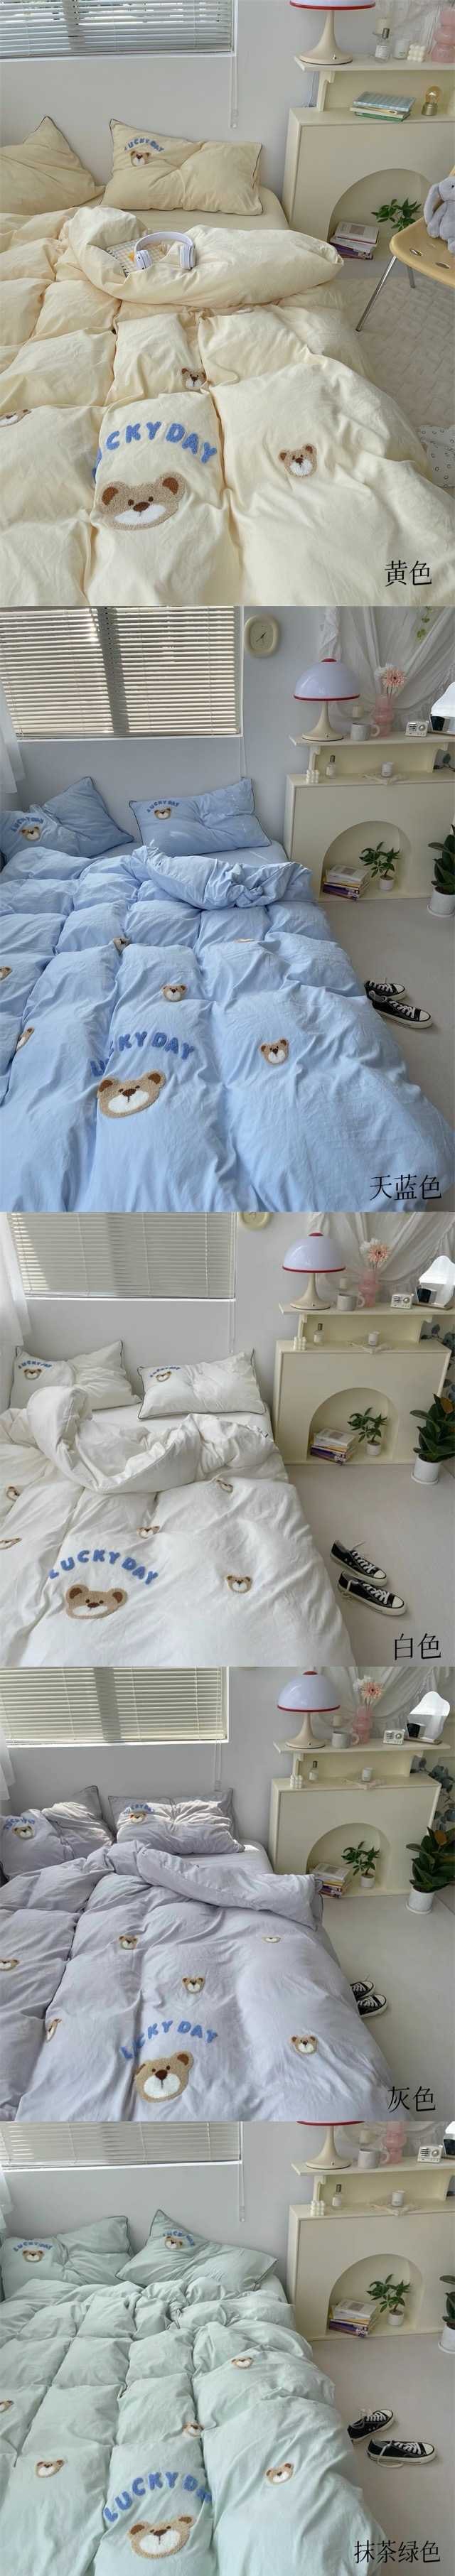 【中国直邮】Lullabuy 奶噗噗的小熊三件套四季居家床品套装床单被套枕套透气柔软可爱(床单*1+被套*1+枕套*1)  Twin Size 天蓝色